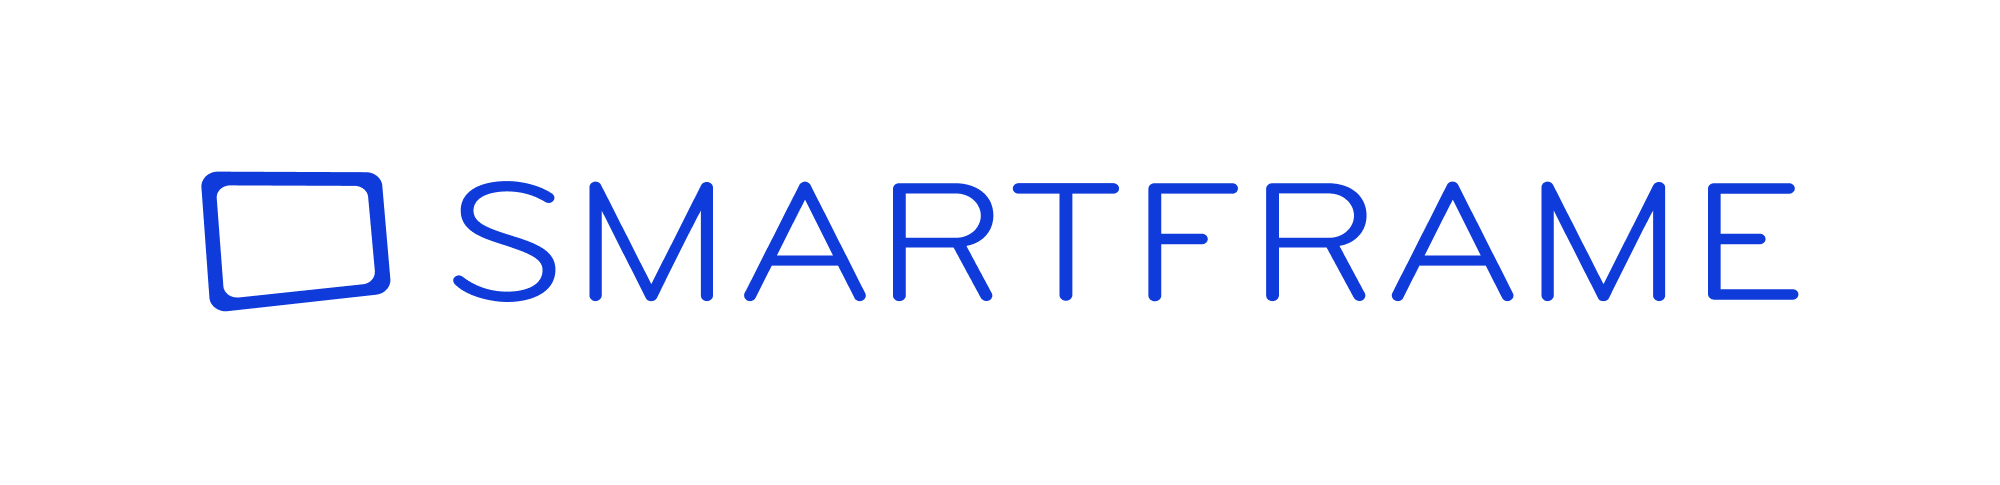 smartframe logo